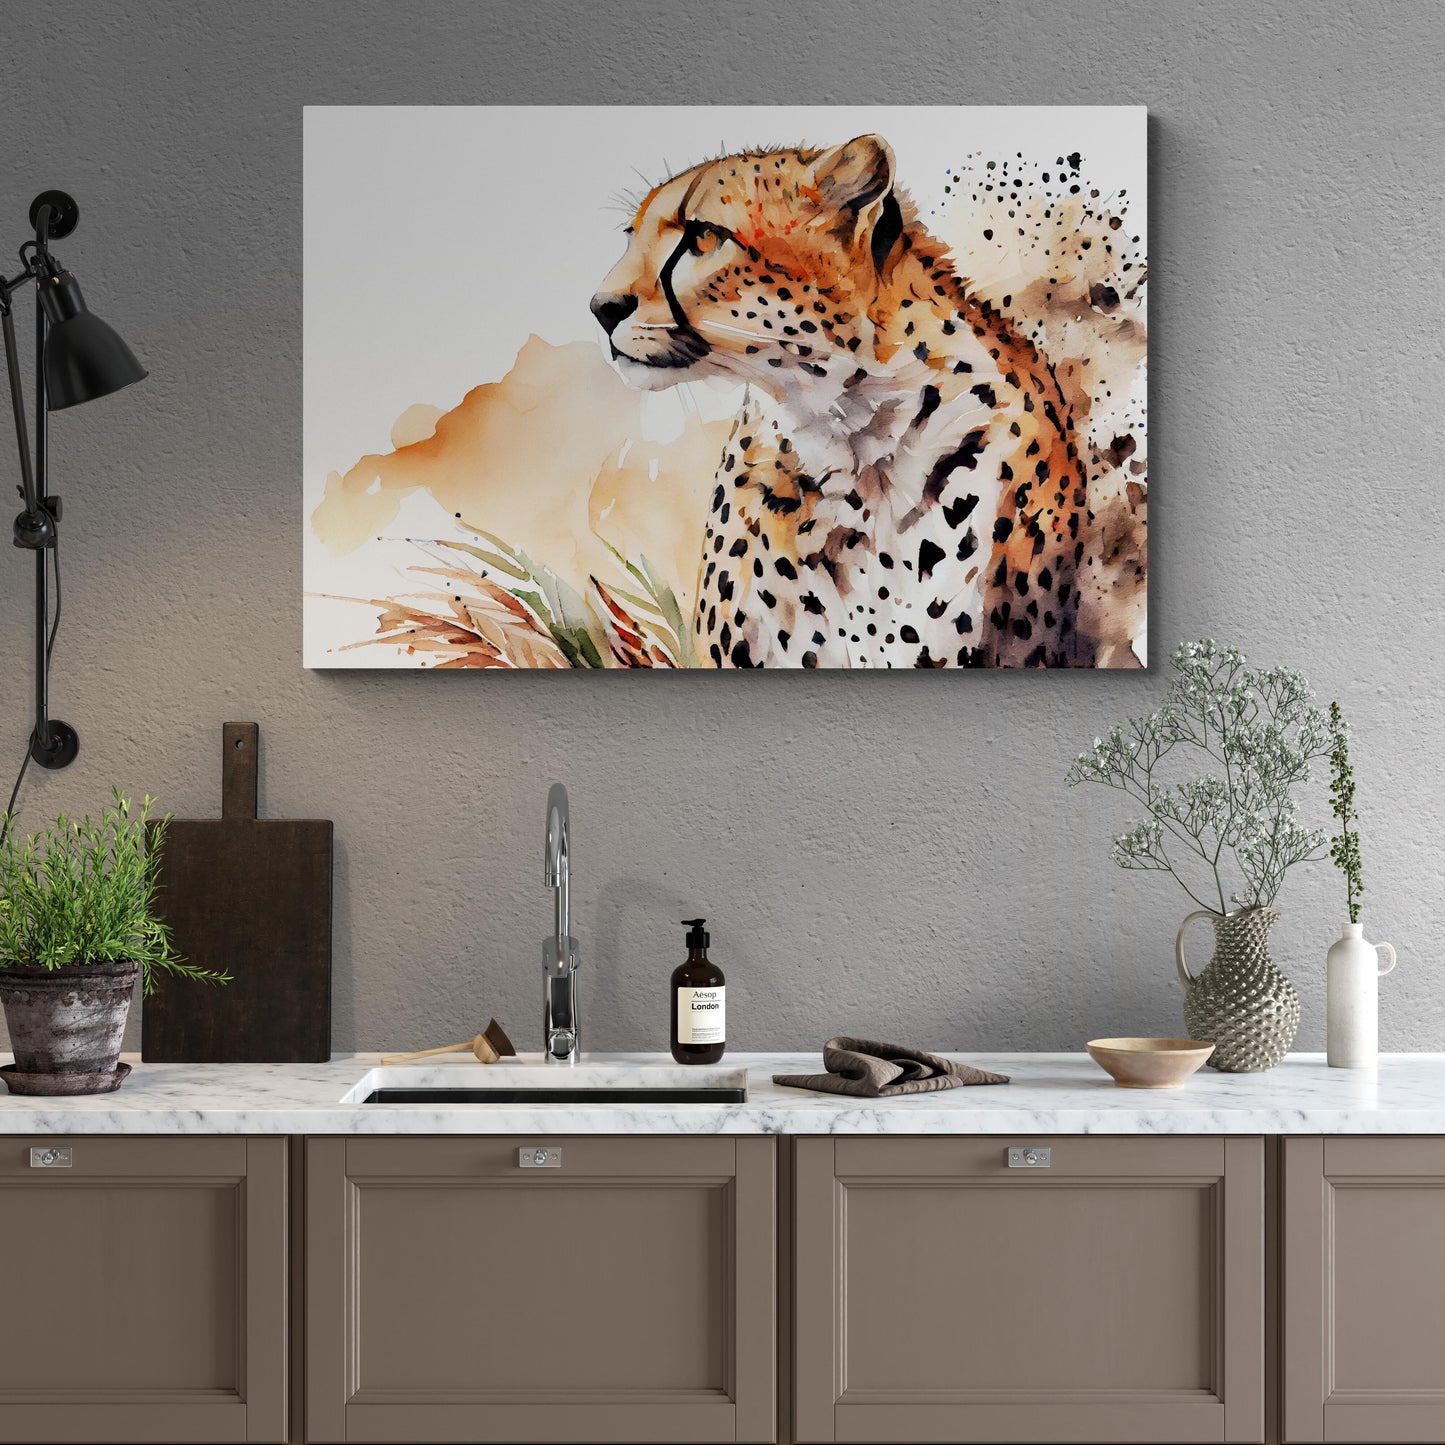 Cheetah Focused Gaze - Geparden Aquarell Wandbild - Querformat Küche